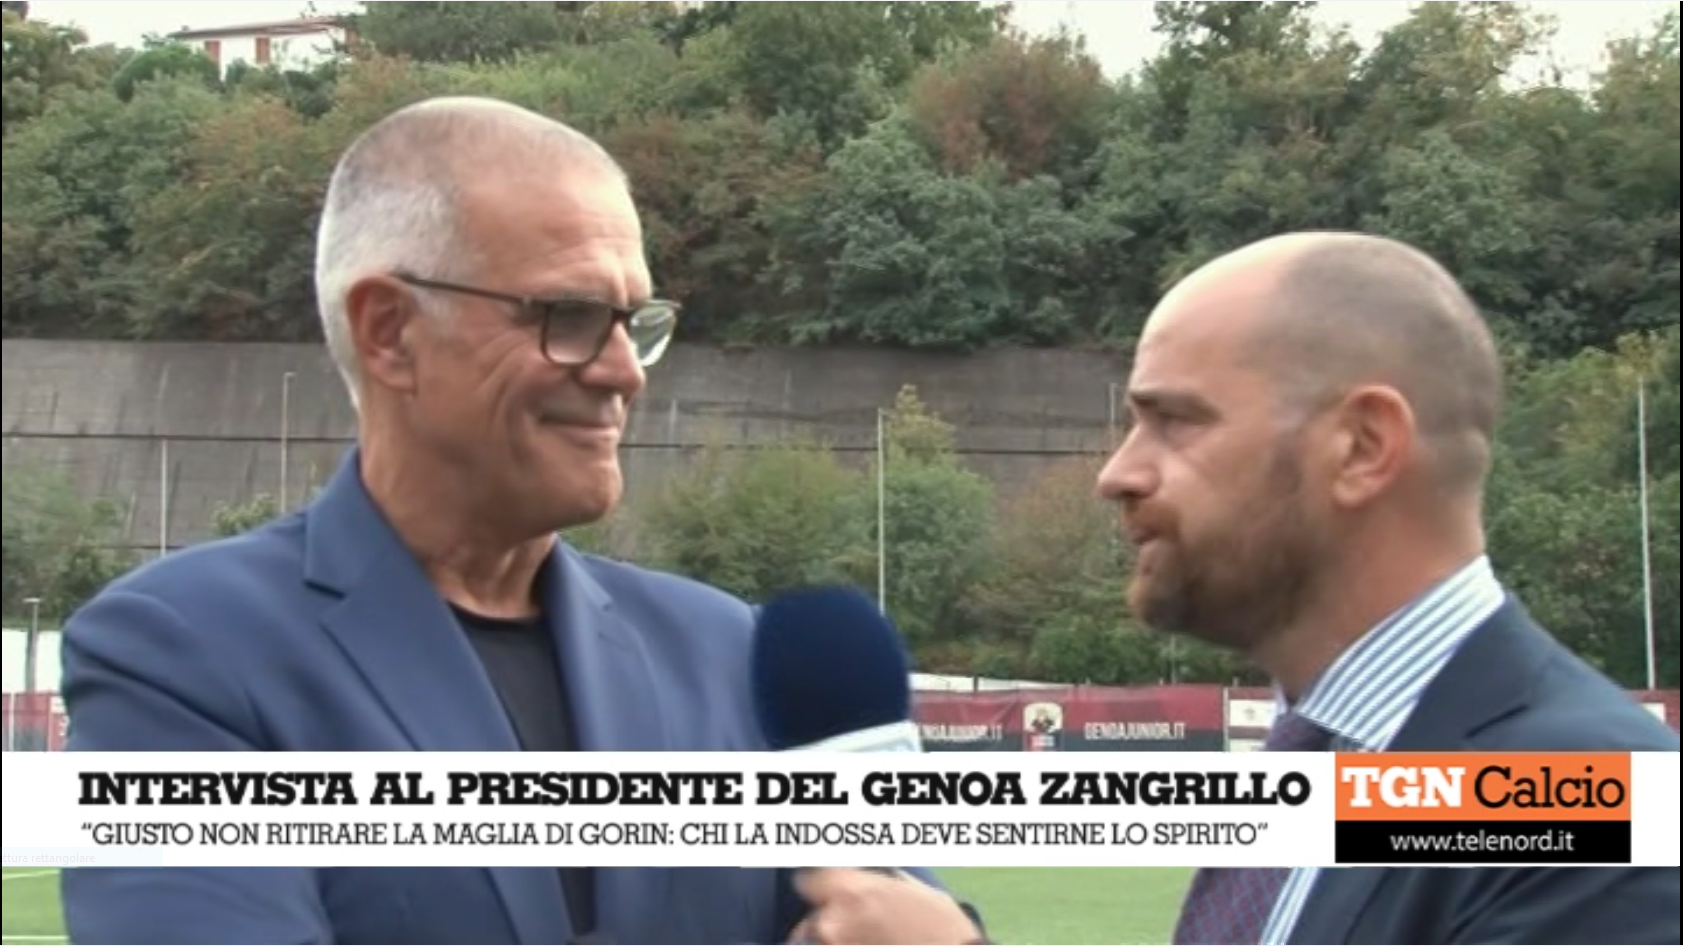 Il Genoa ricorda Gorin, Zangrillo: "Chi indossa la sua maglia deve sentirne lo spirito"